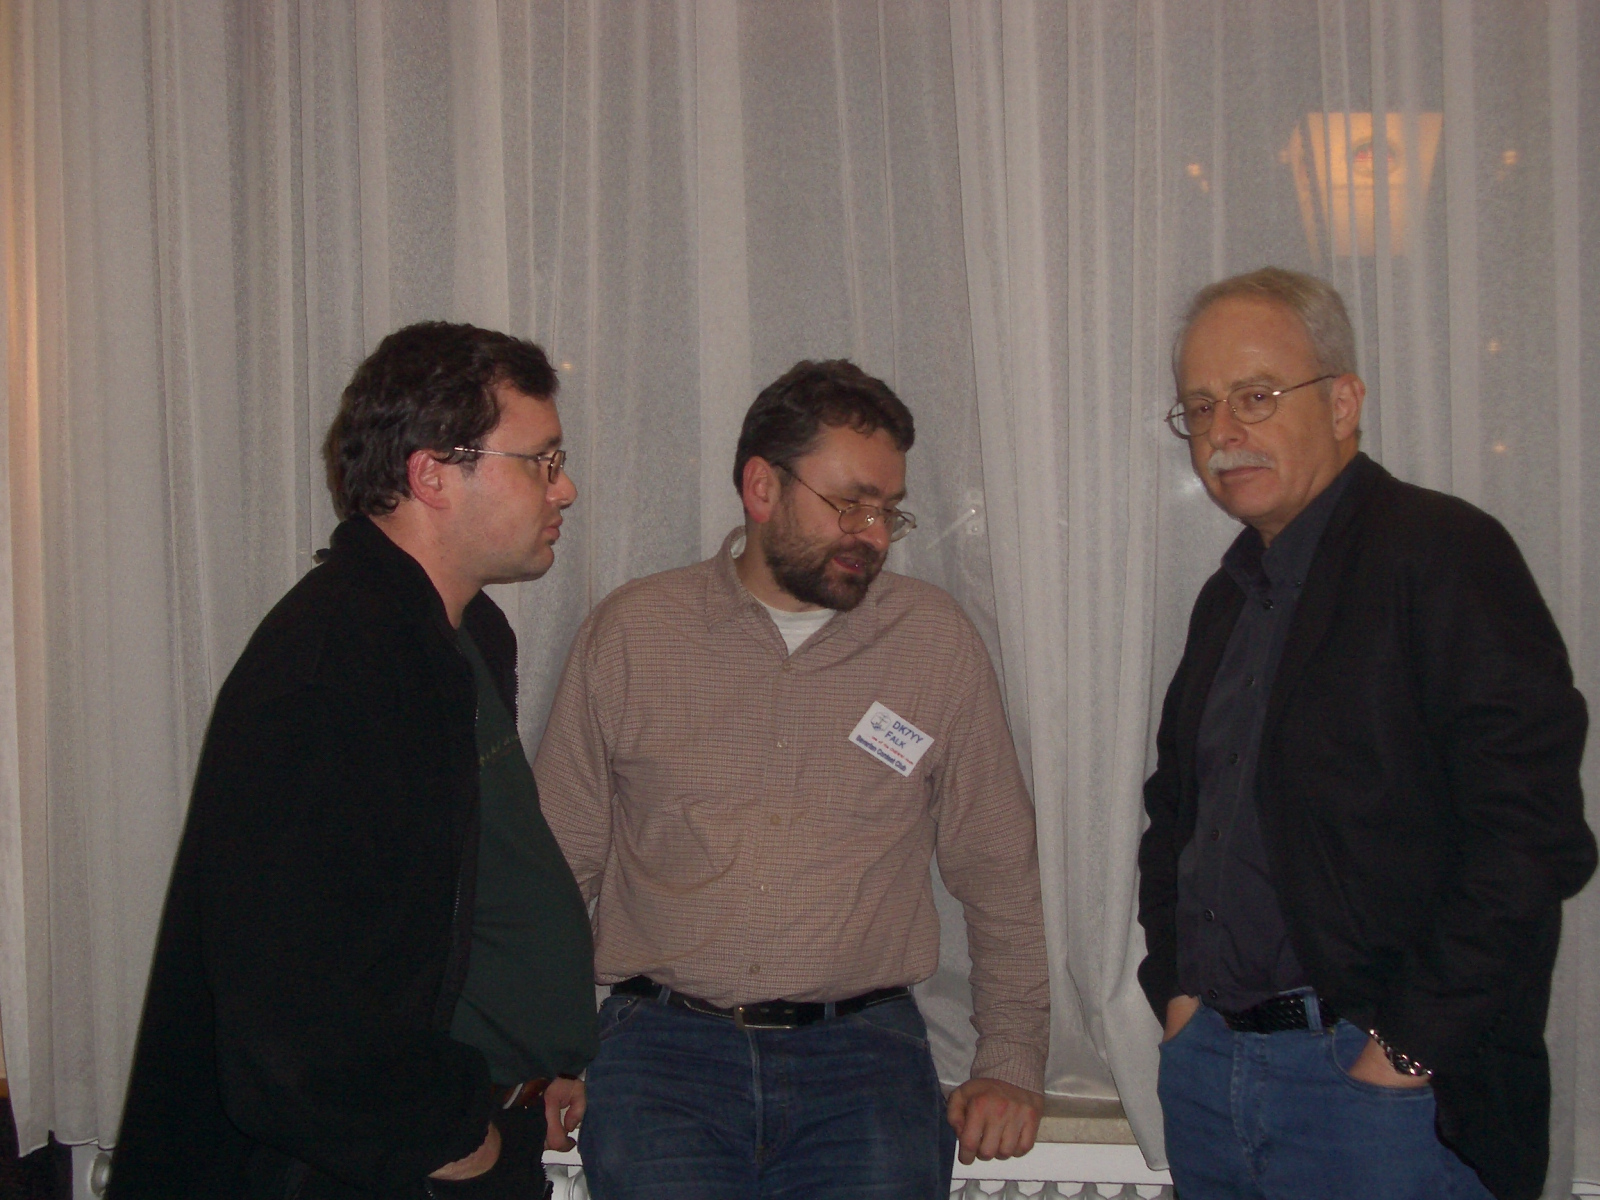 HL3K-Treffen 2004